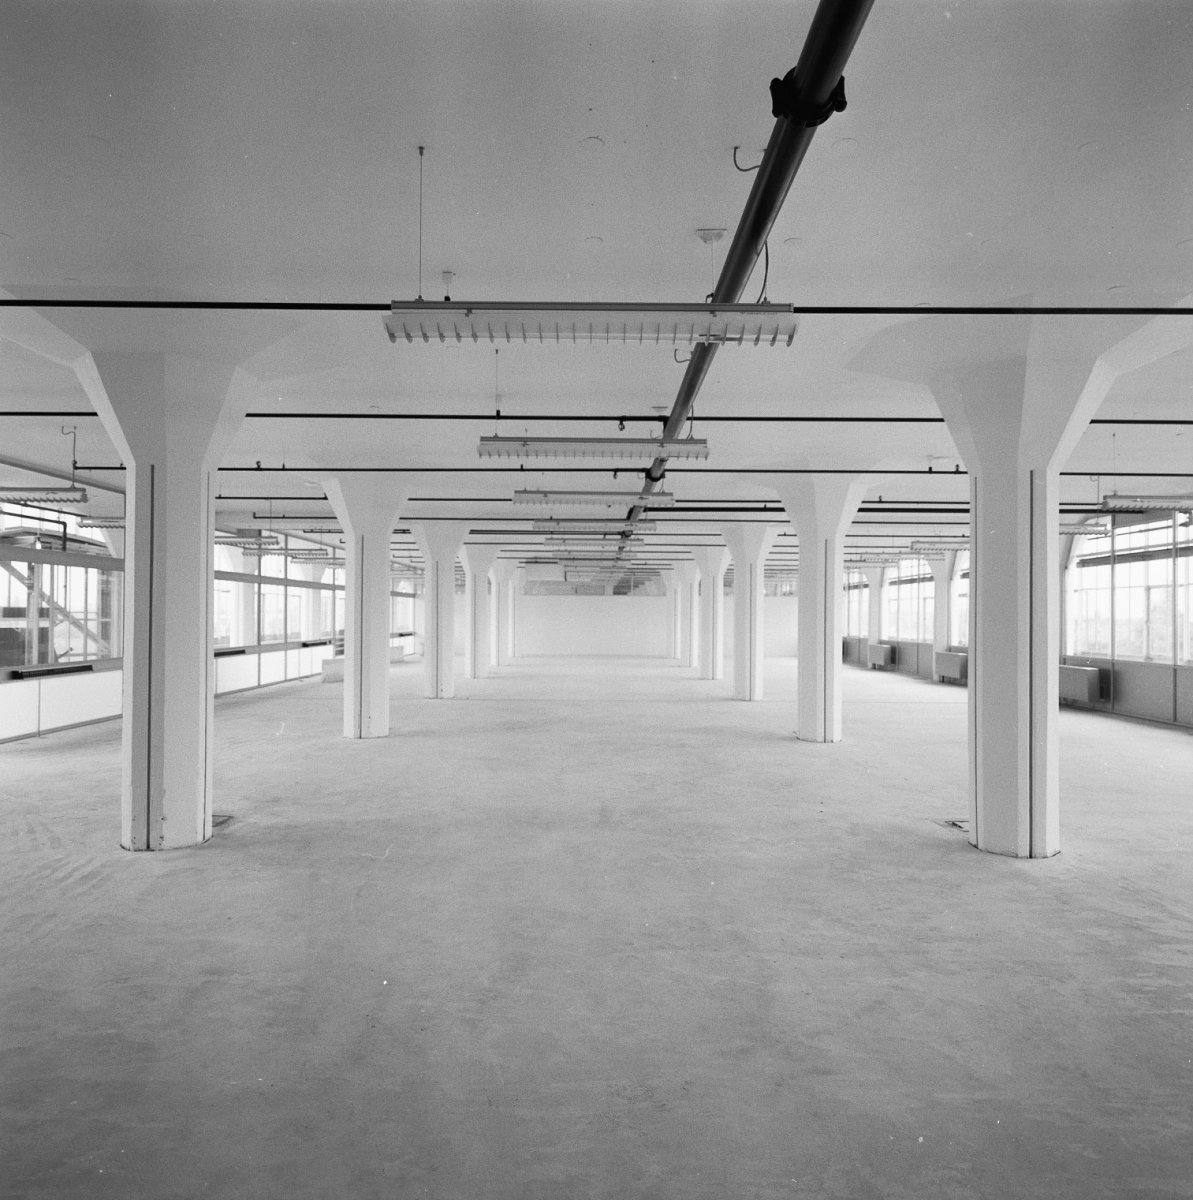 Interieur opgeknapte lege ruimte verlichting sprinklerinstallatei geegaliseerde vloer gewit Rotterdam 20002772 RCE